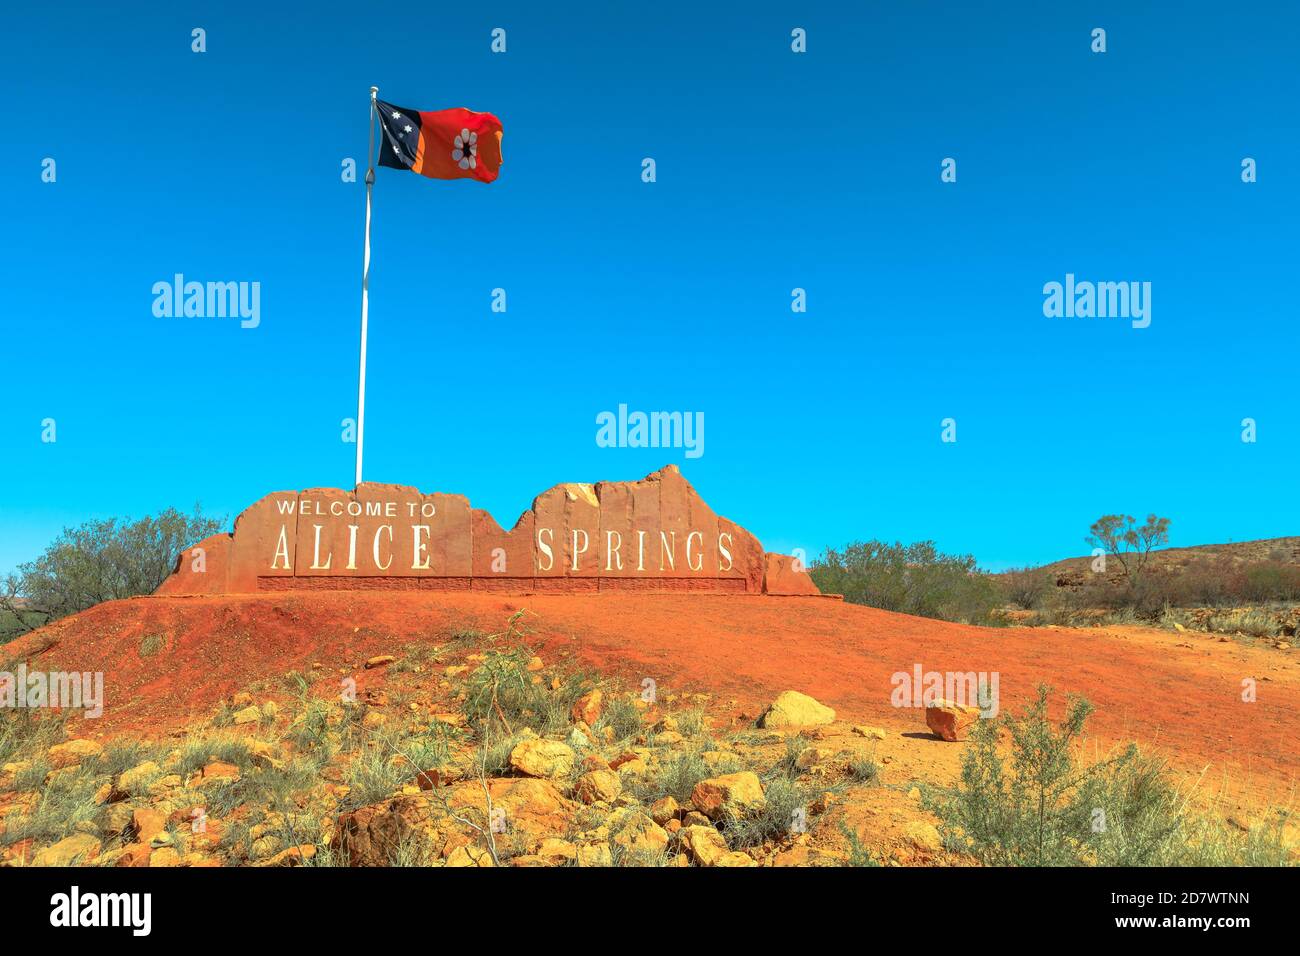 Panneau de bienvenue d'Alice Springs et drapeau australien du territoire du Nord en Australie centrale. Tourisme dans le désert de l'Outback Red Centre. Ciel bleu avec copie Banque D'Images